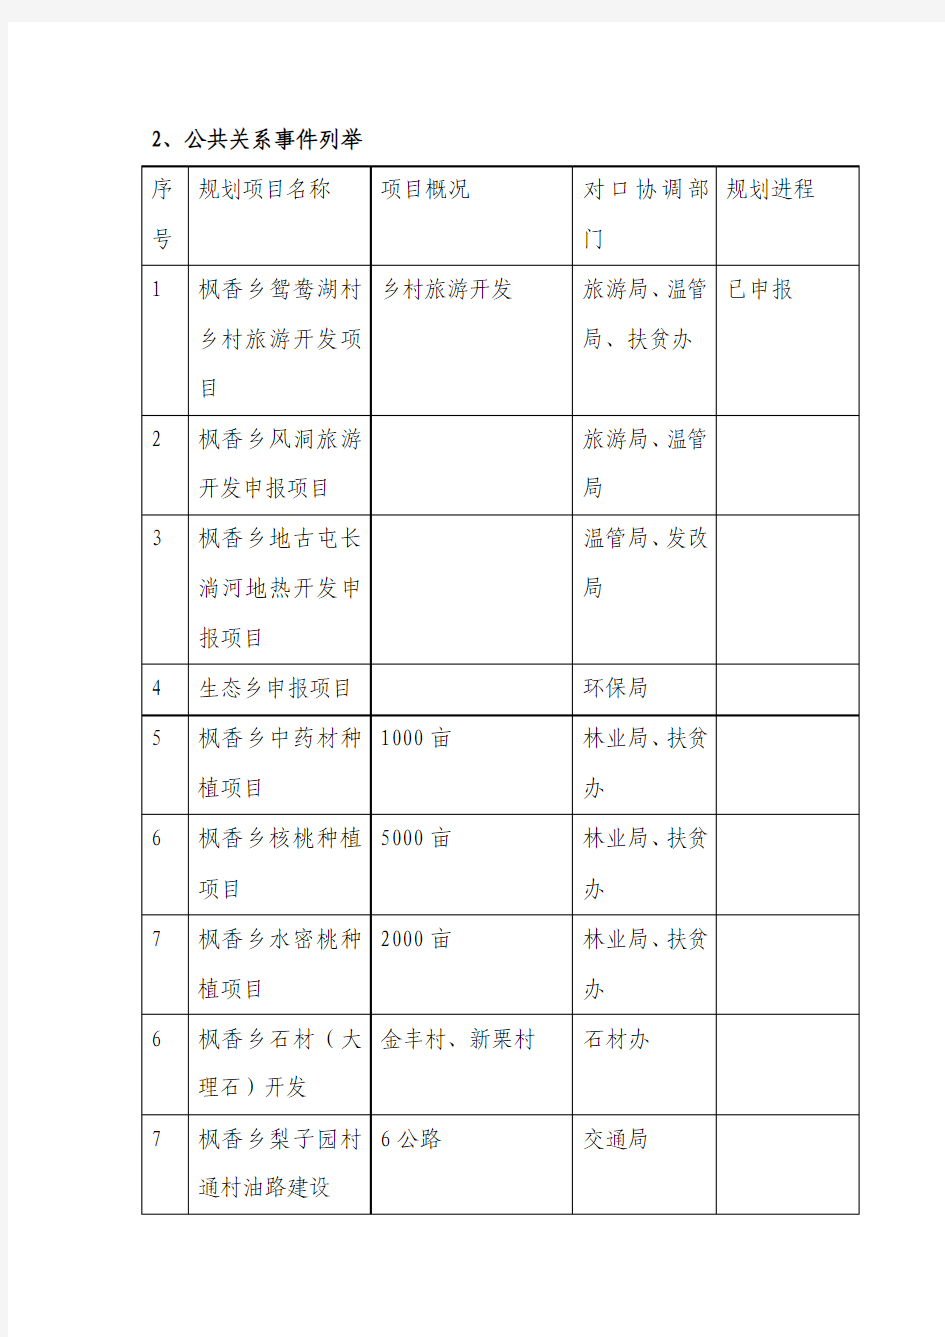 枫香乡科学发展项目规划情况介绍及需协调的公共关系事件列举